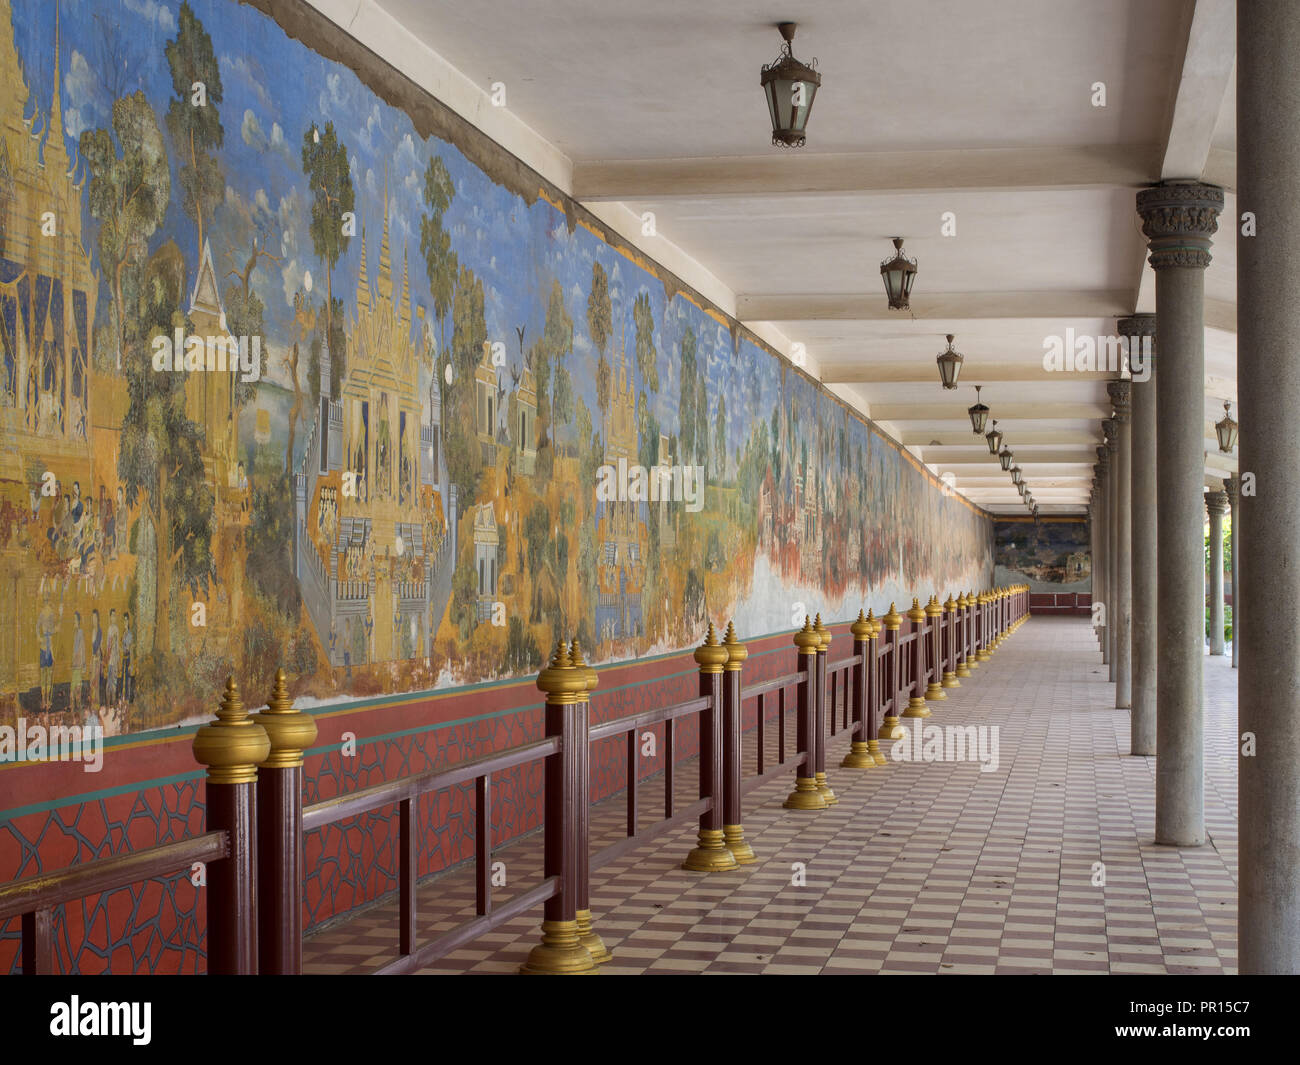 Peintures murales dans le complexe du palais royal, représentant des scènes du Ramayana, Phnom Penh, Cambodge, Indochine, Asie du Sud, Asie Banque D'Images